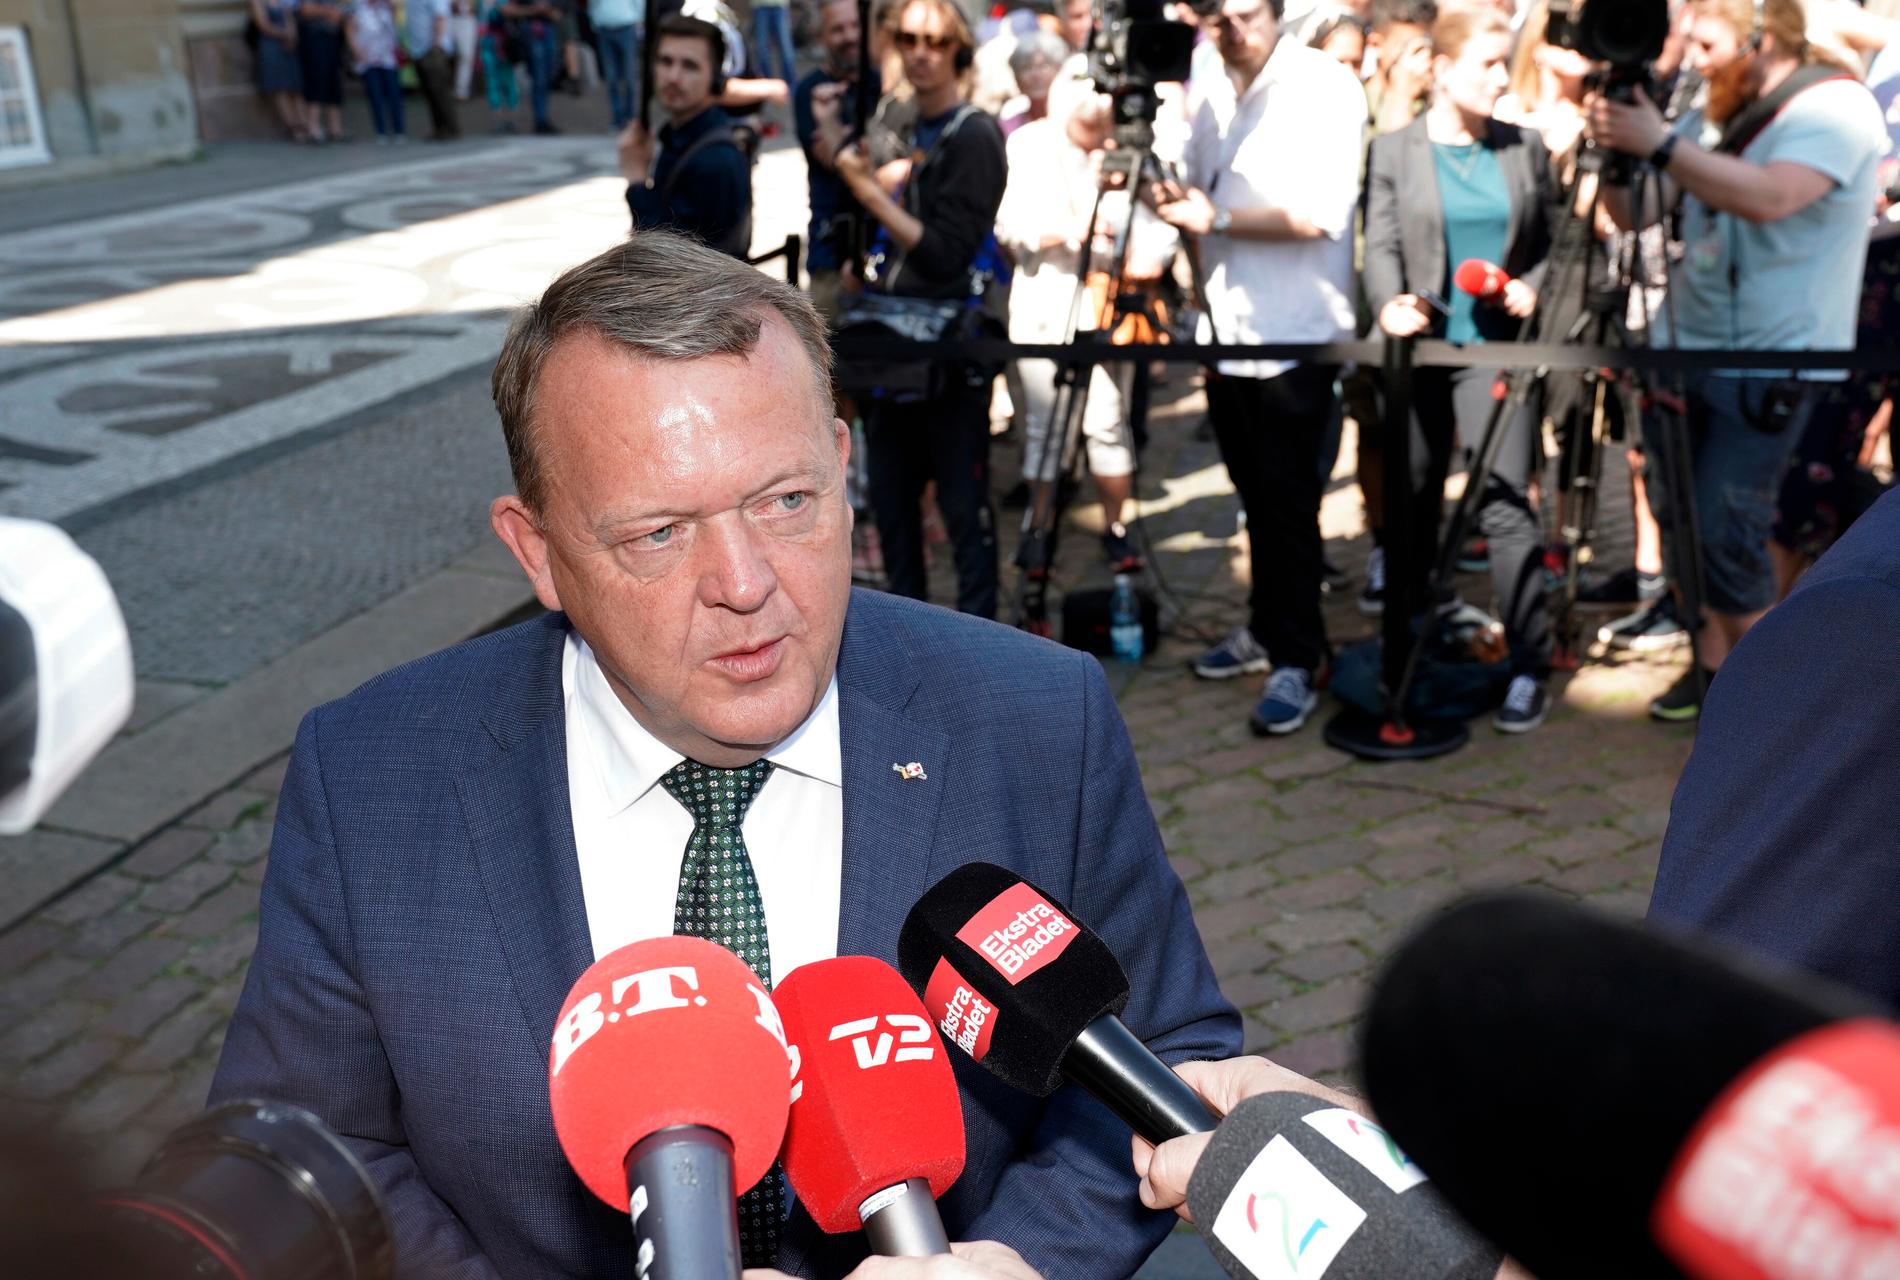 Danmarks avgående statsminister Lars Løkke Rasmussen (Venstre) talar med journalister efter sitt besök hos drottningen.